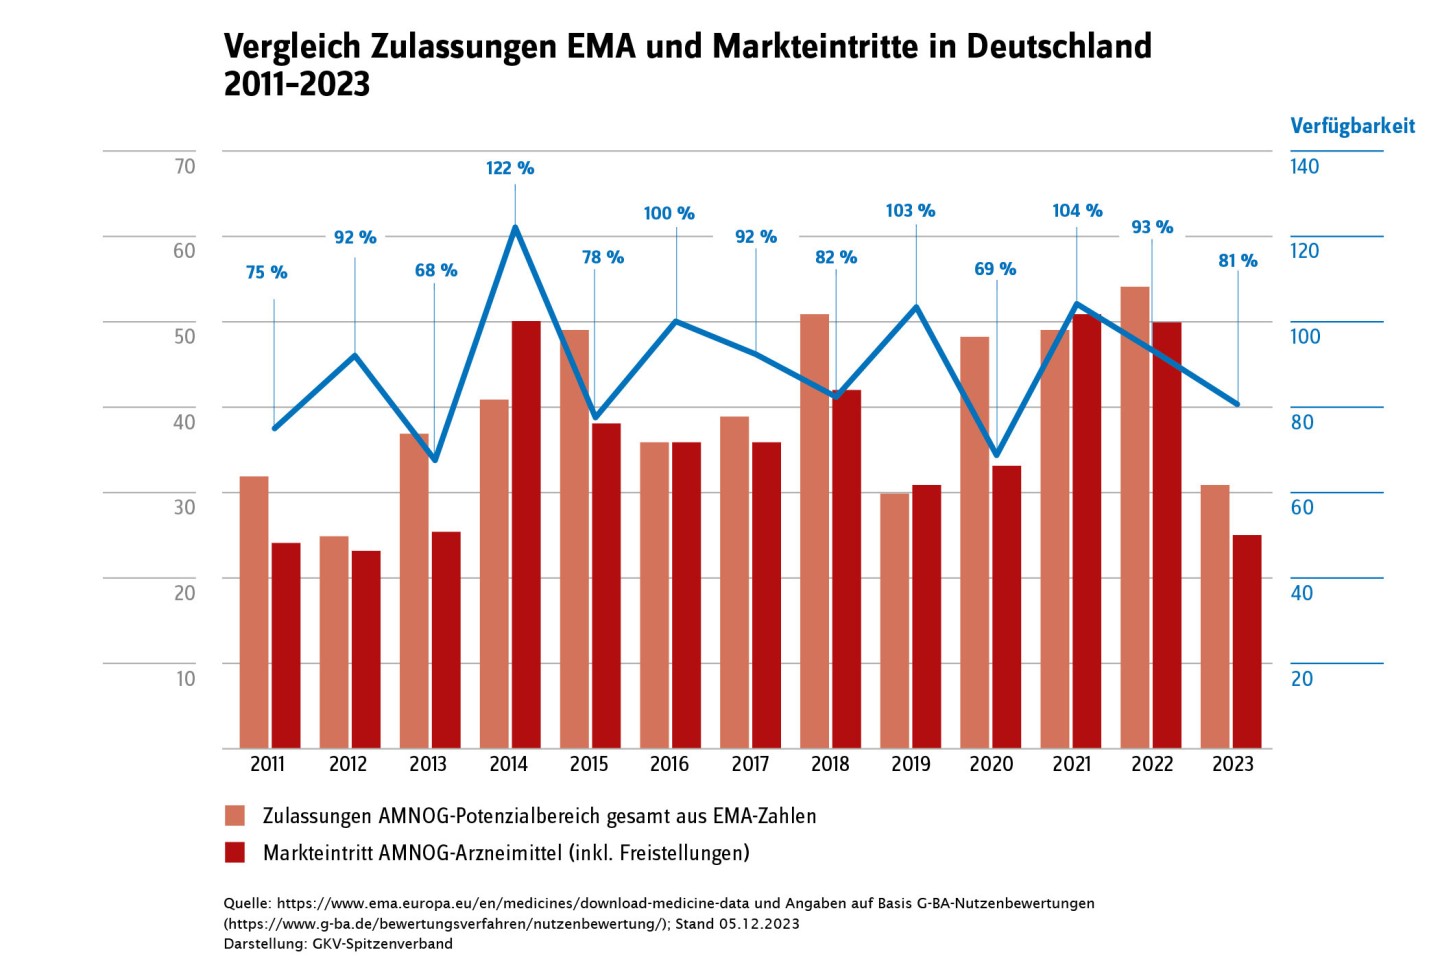 Vergleich der EMA-Zulassungen und Markteintritte in Deutschland zwischen 2011 und 2023